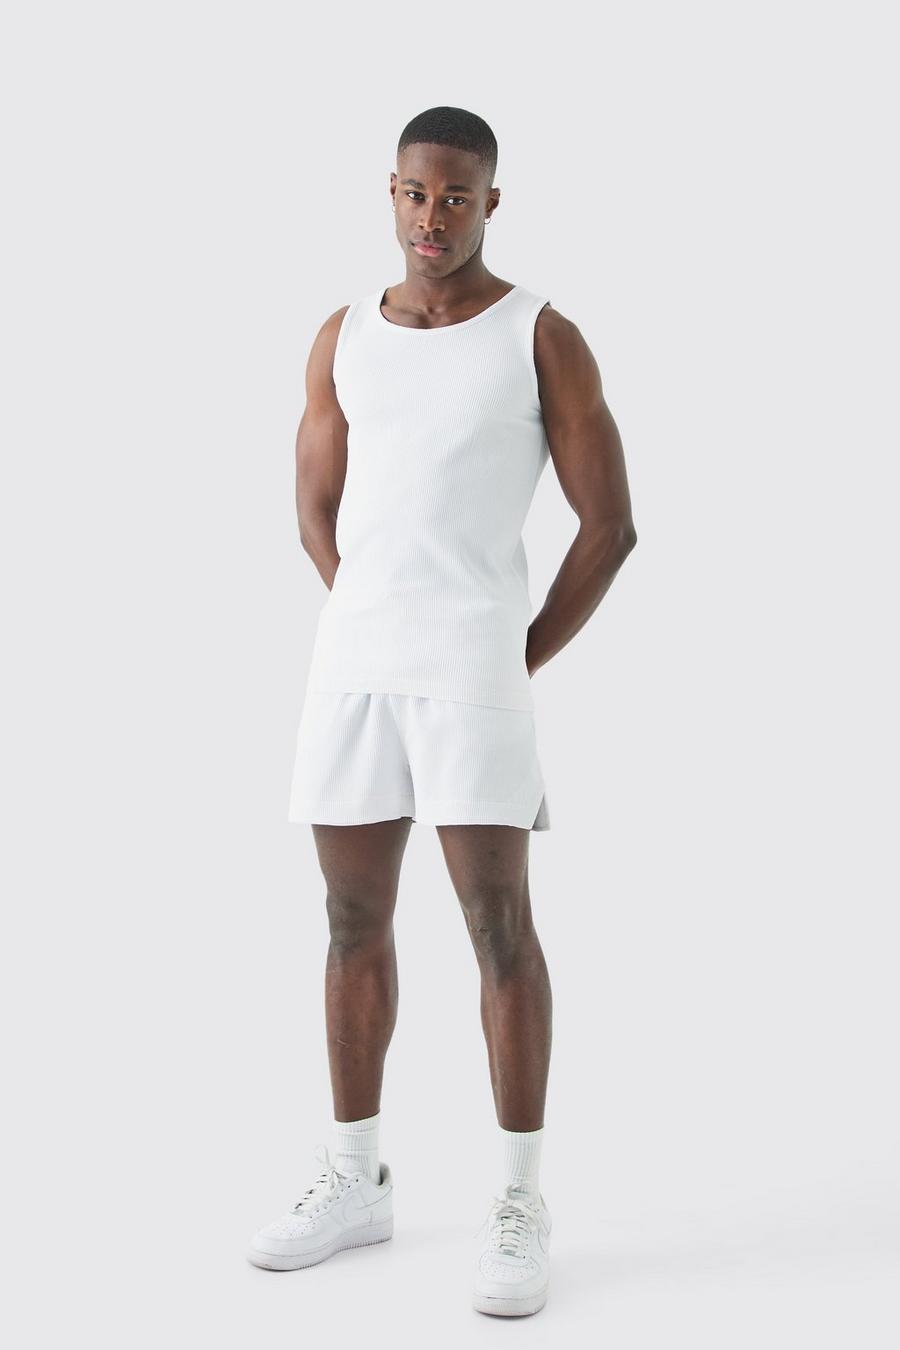 Pantalón corto y top sin mangas plisado ajustado al músculo, White